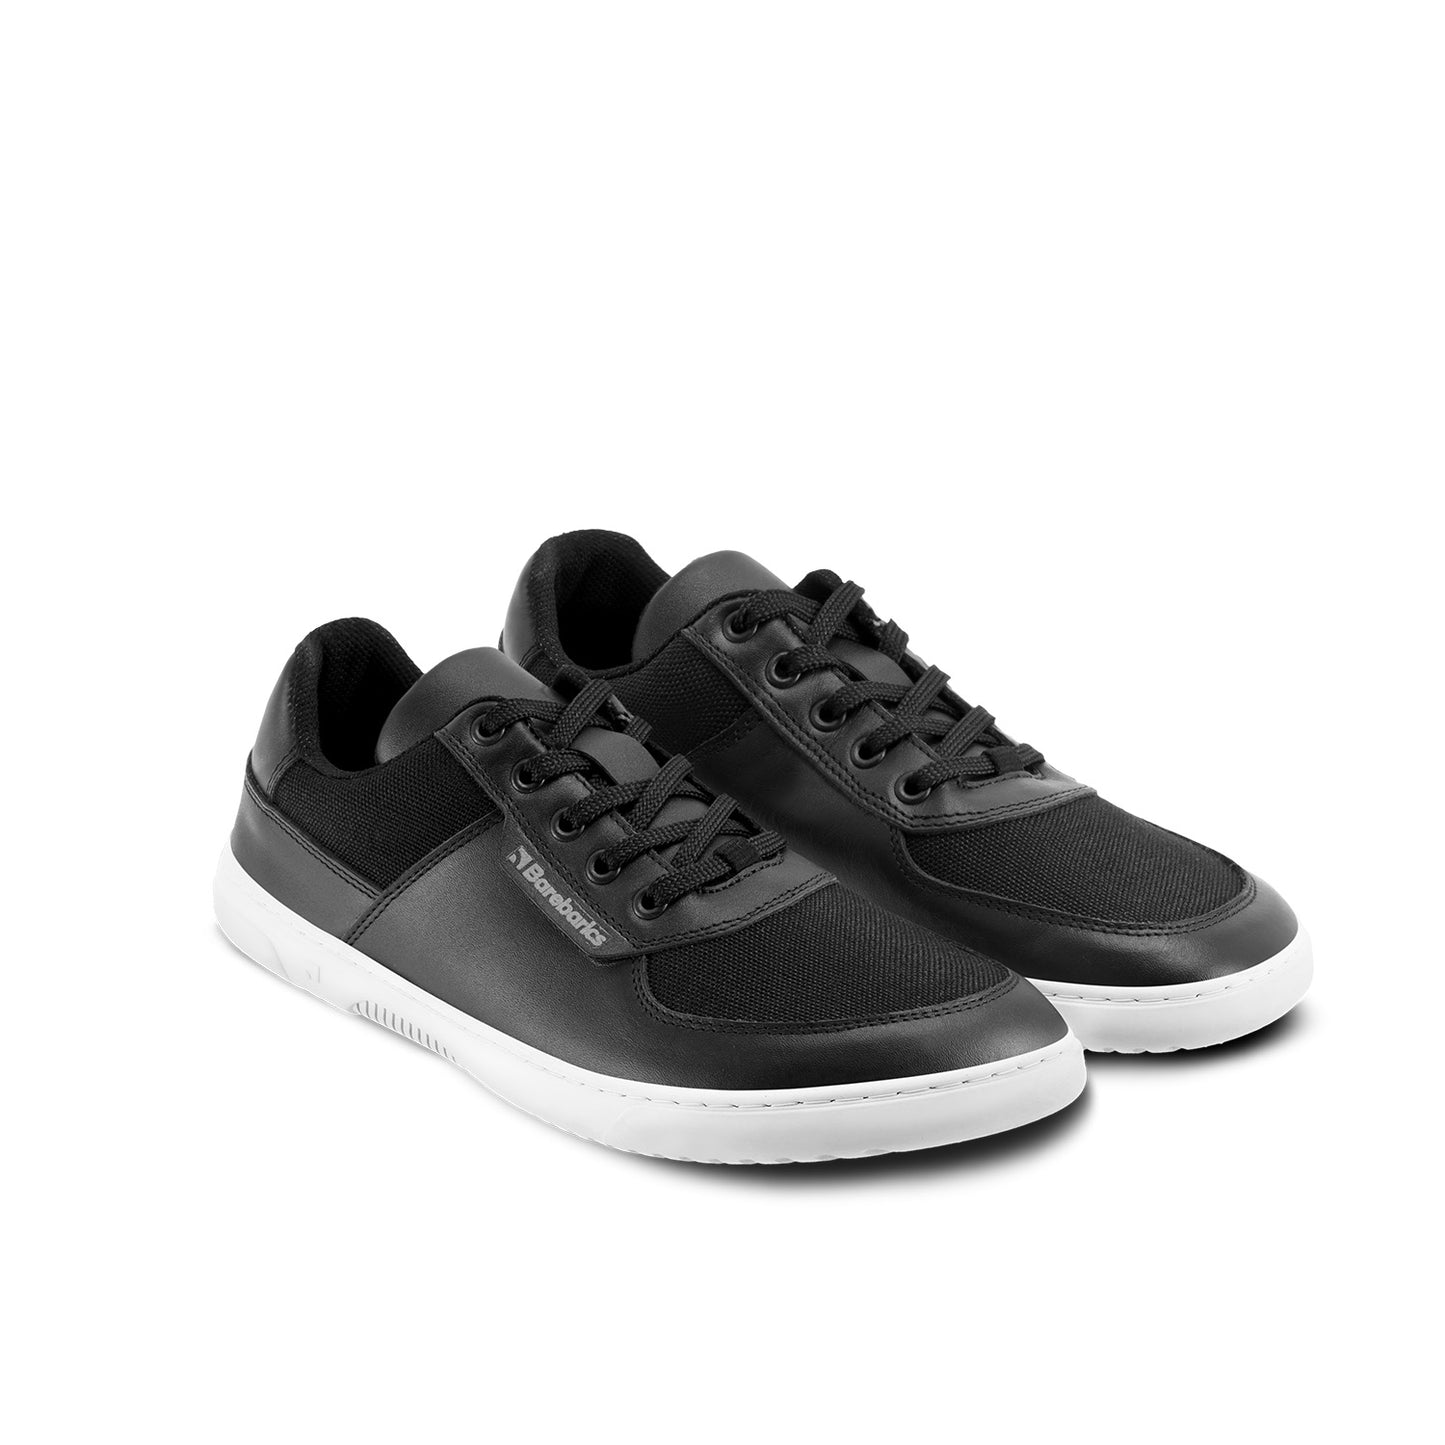 Barebarics Bravo Barefoot Sneakers - Black & White